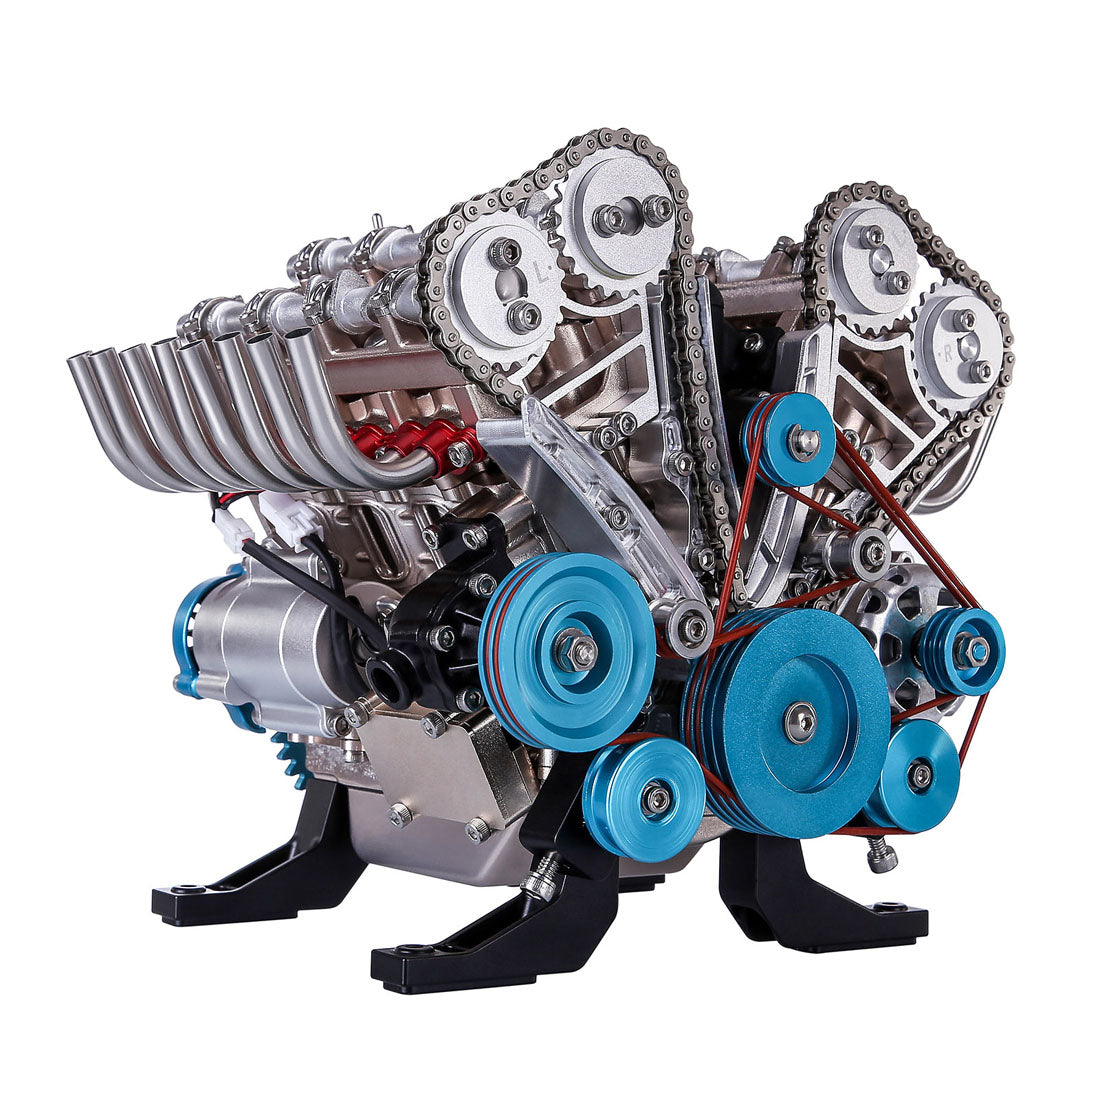 V8 Engine Model Kit that Works - Build Your Own V8 Engine